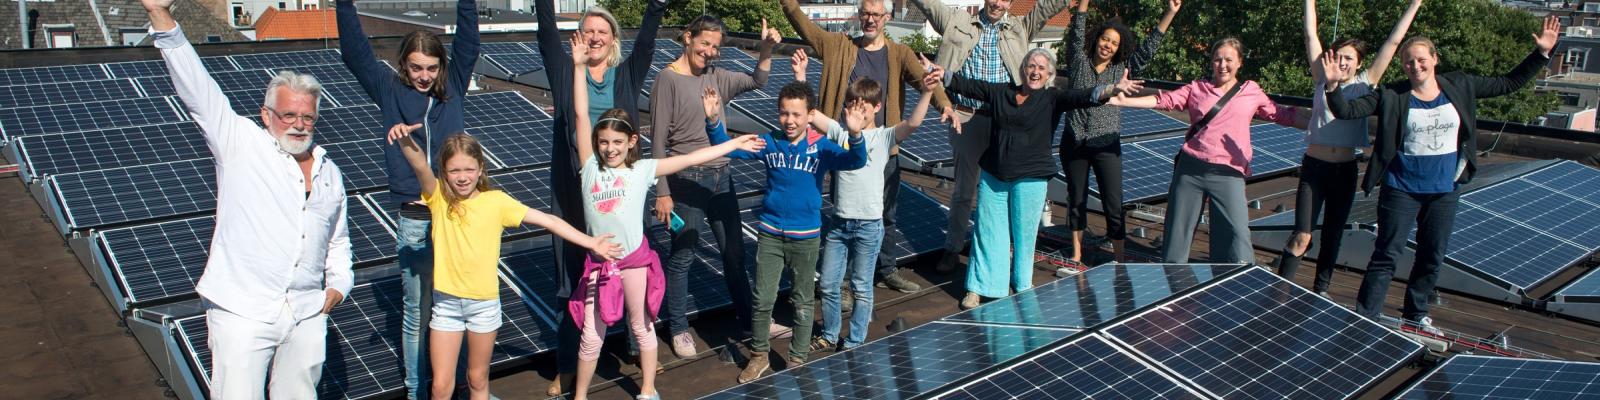 Energiegemeenschap op plat dak met zonnepanelen